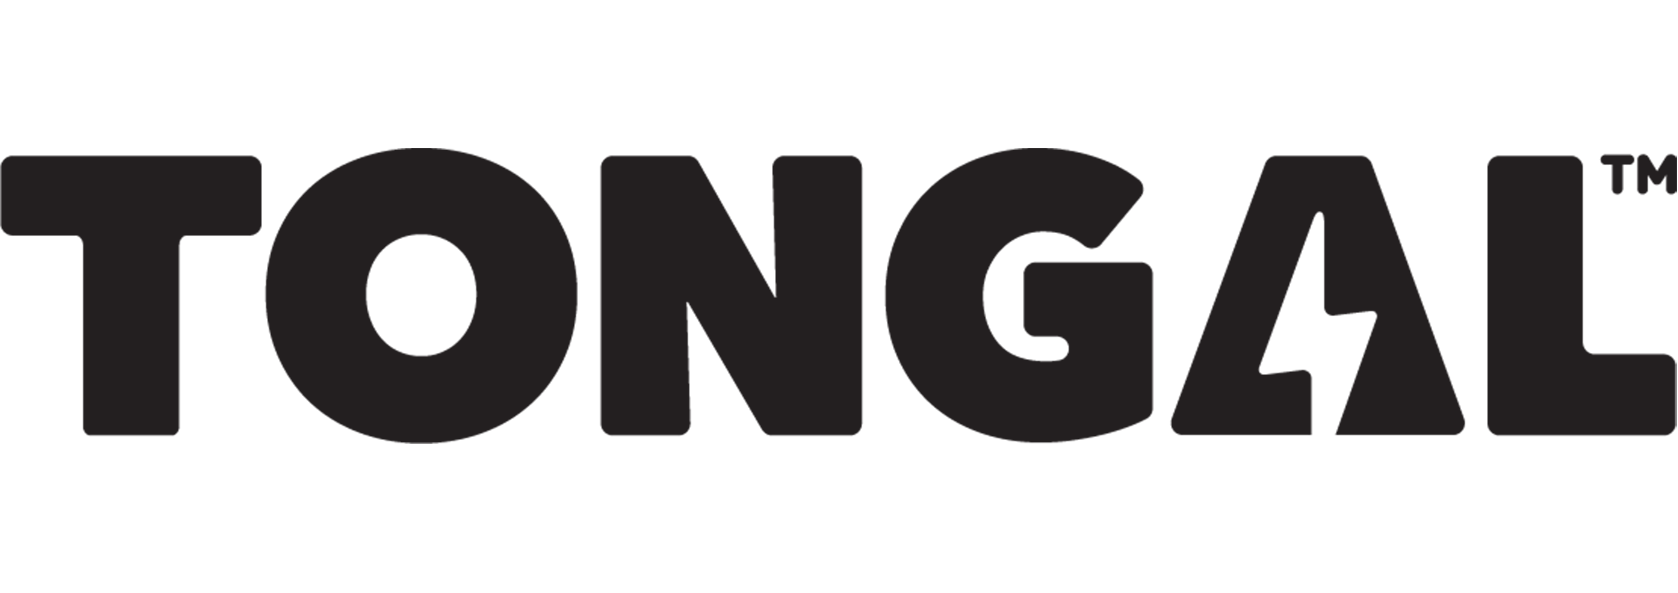 Tongal Logo